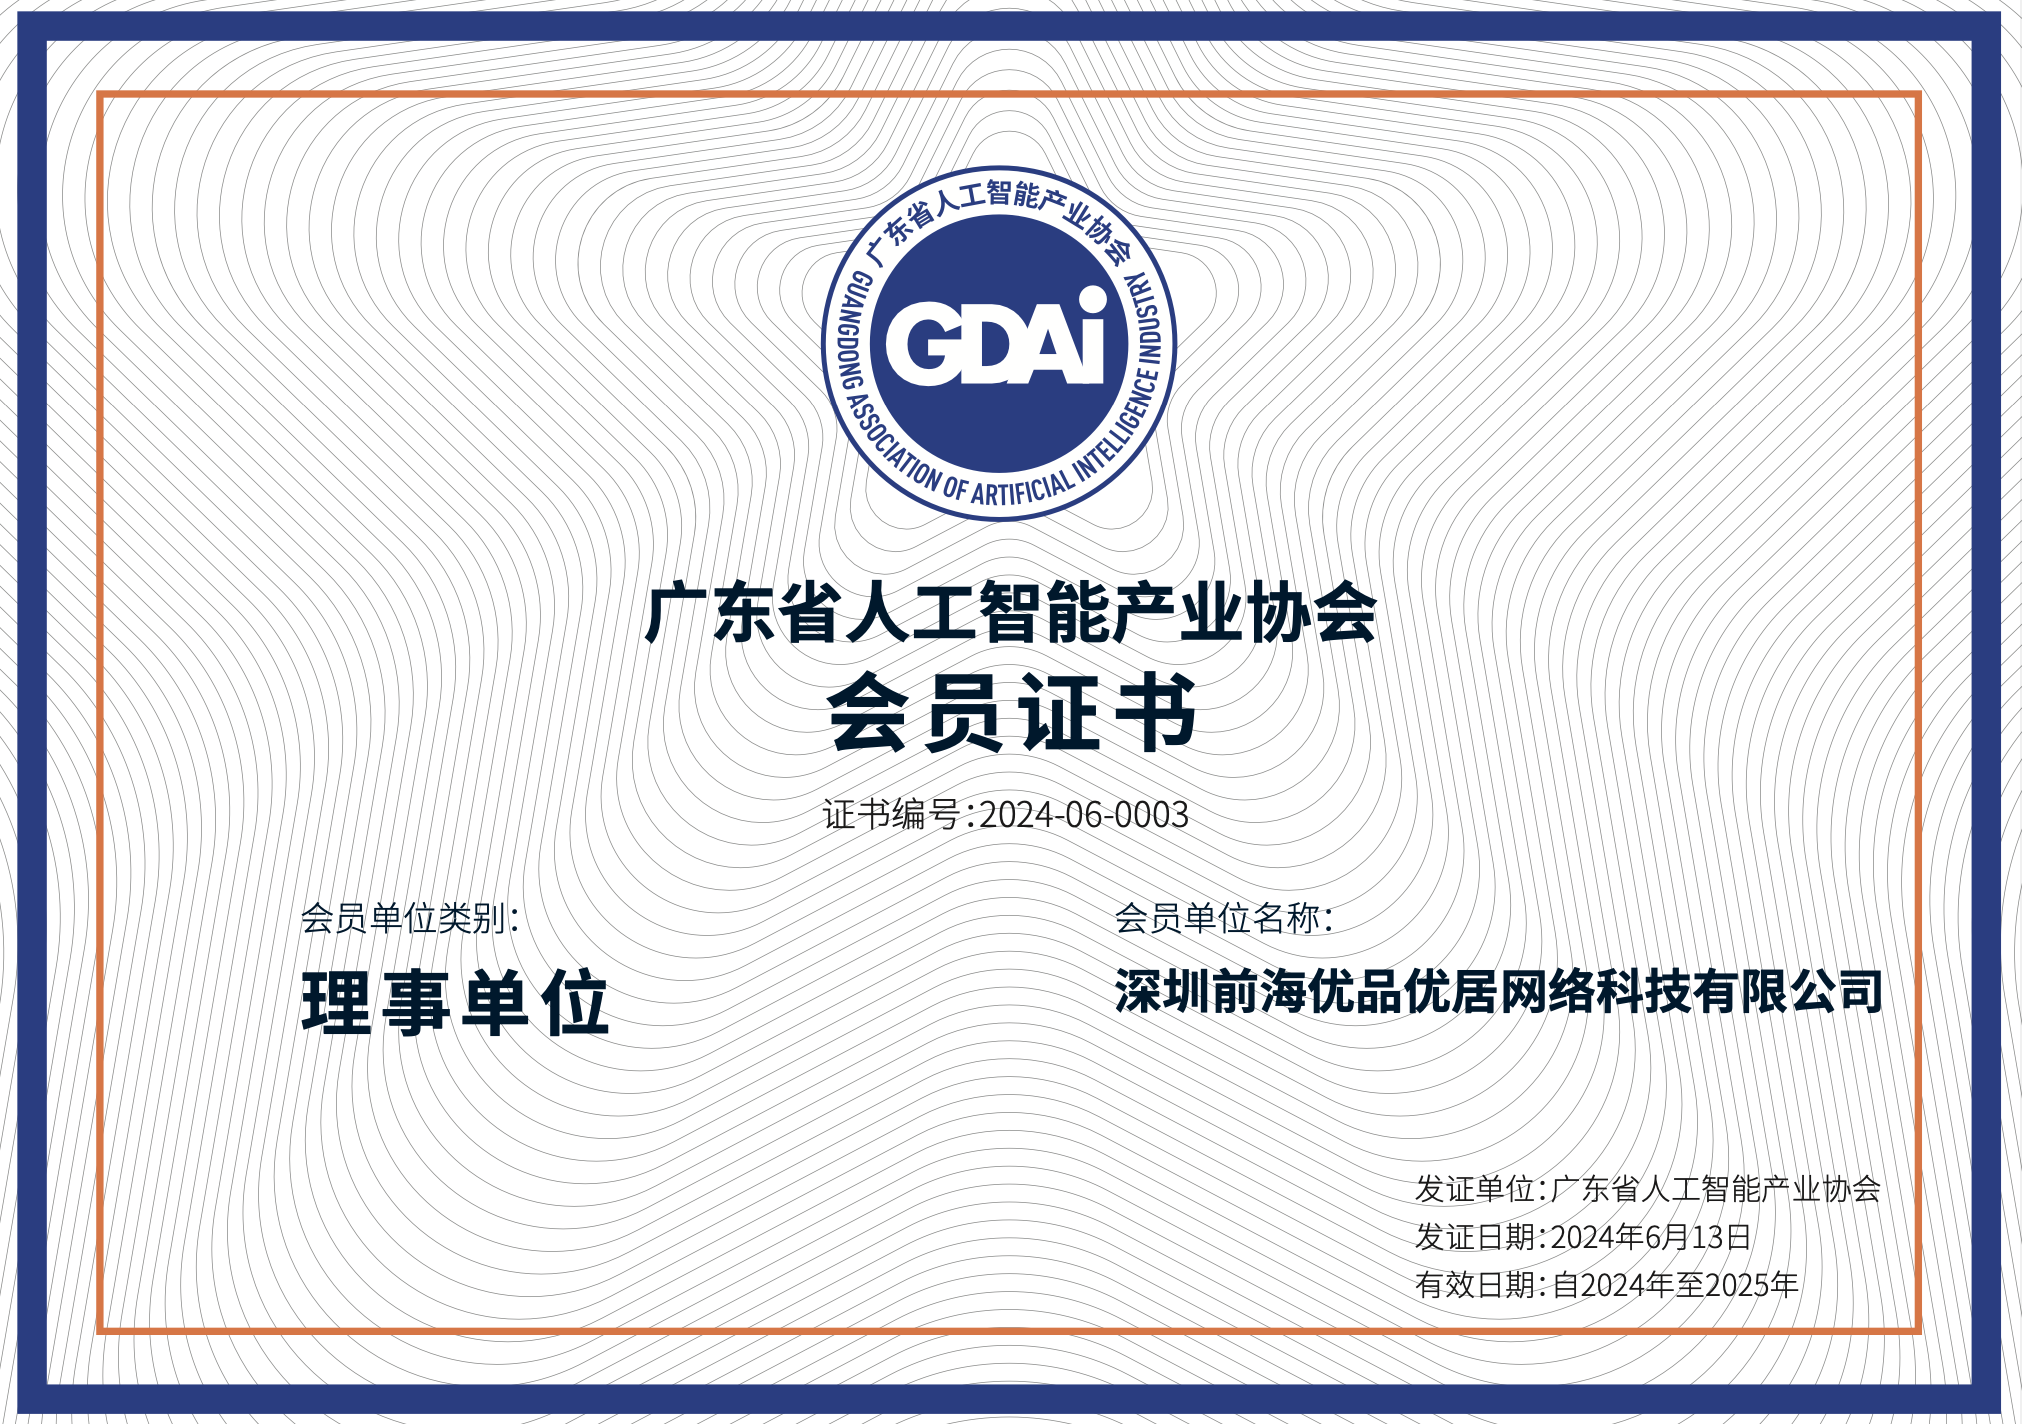 优居正式加入广东省人工智能产业协会理事单位